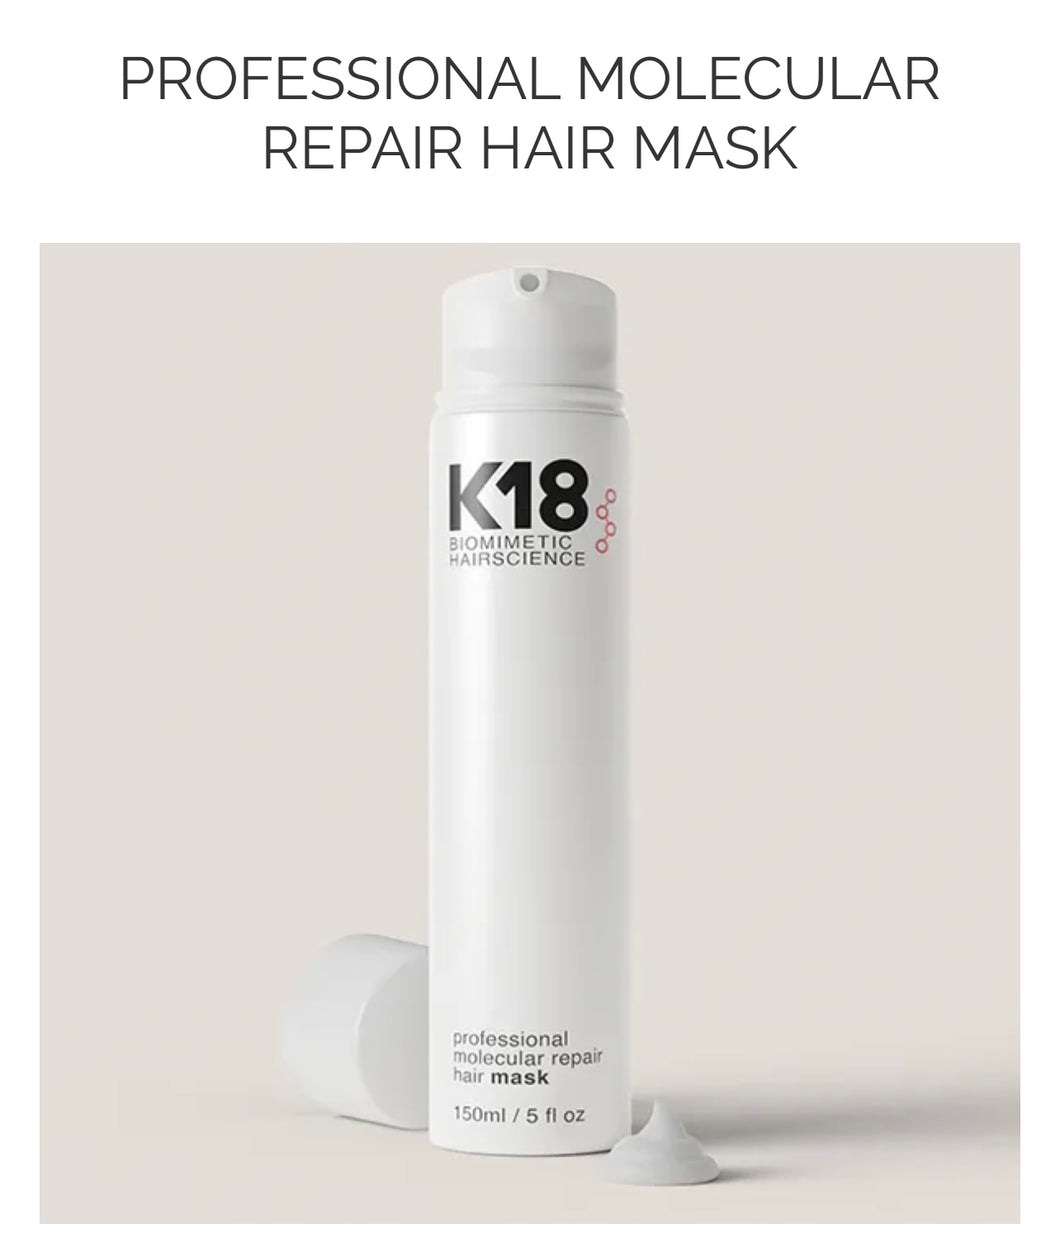 K-8 Biomimetic Hair Science Professional Molecular Repair Hair Mask 150ml